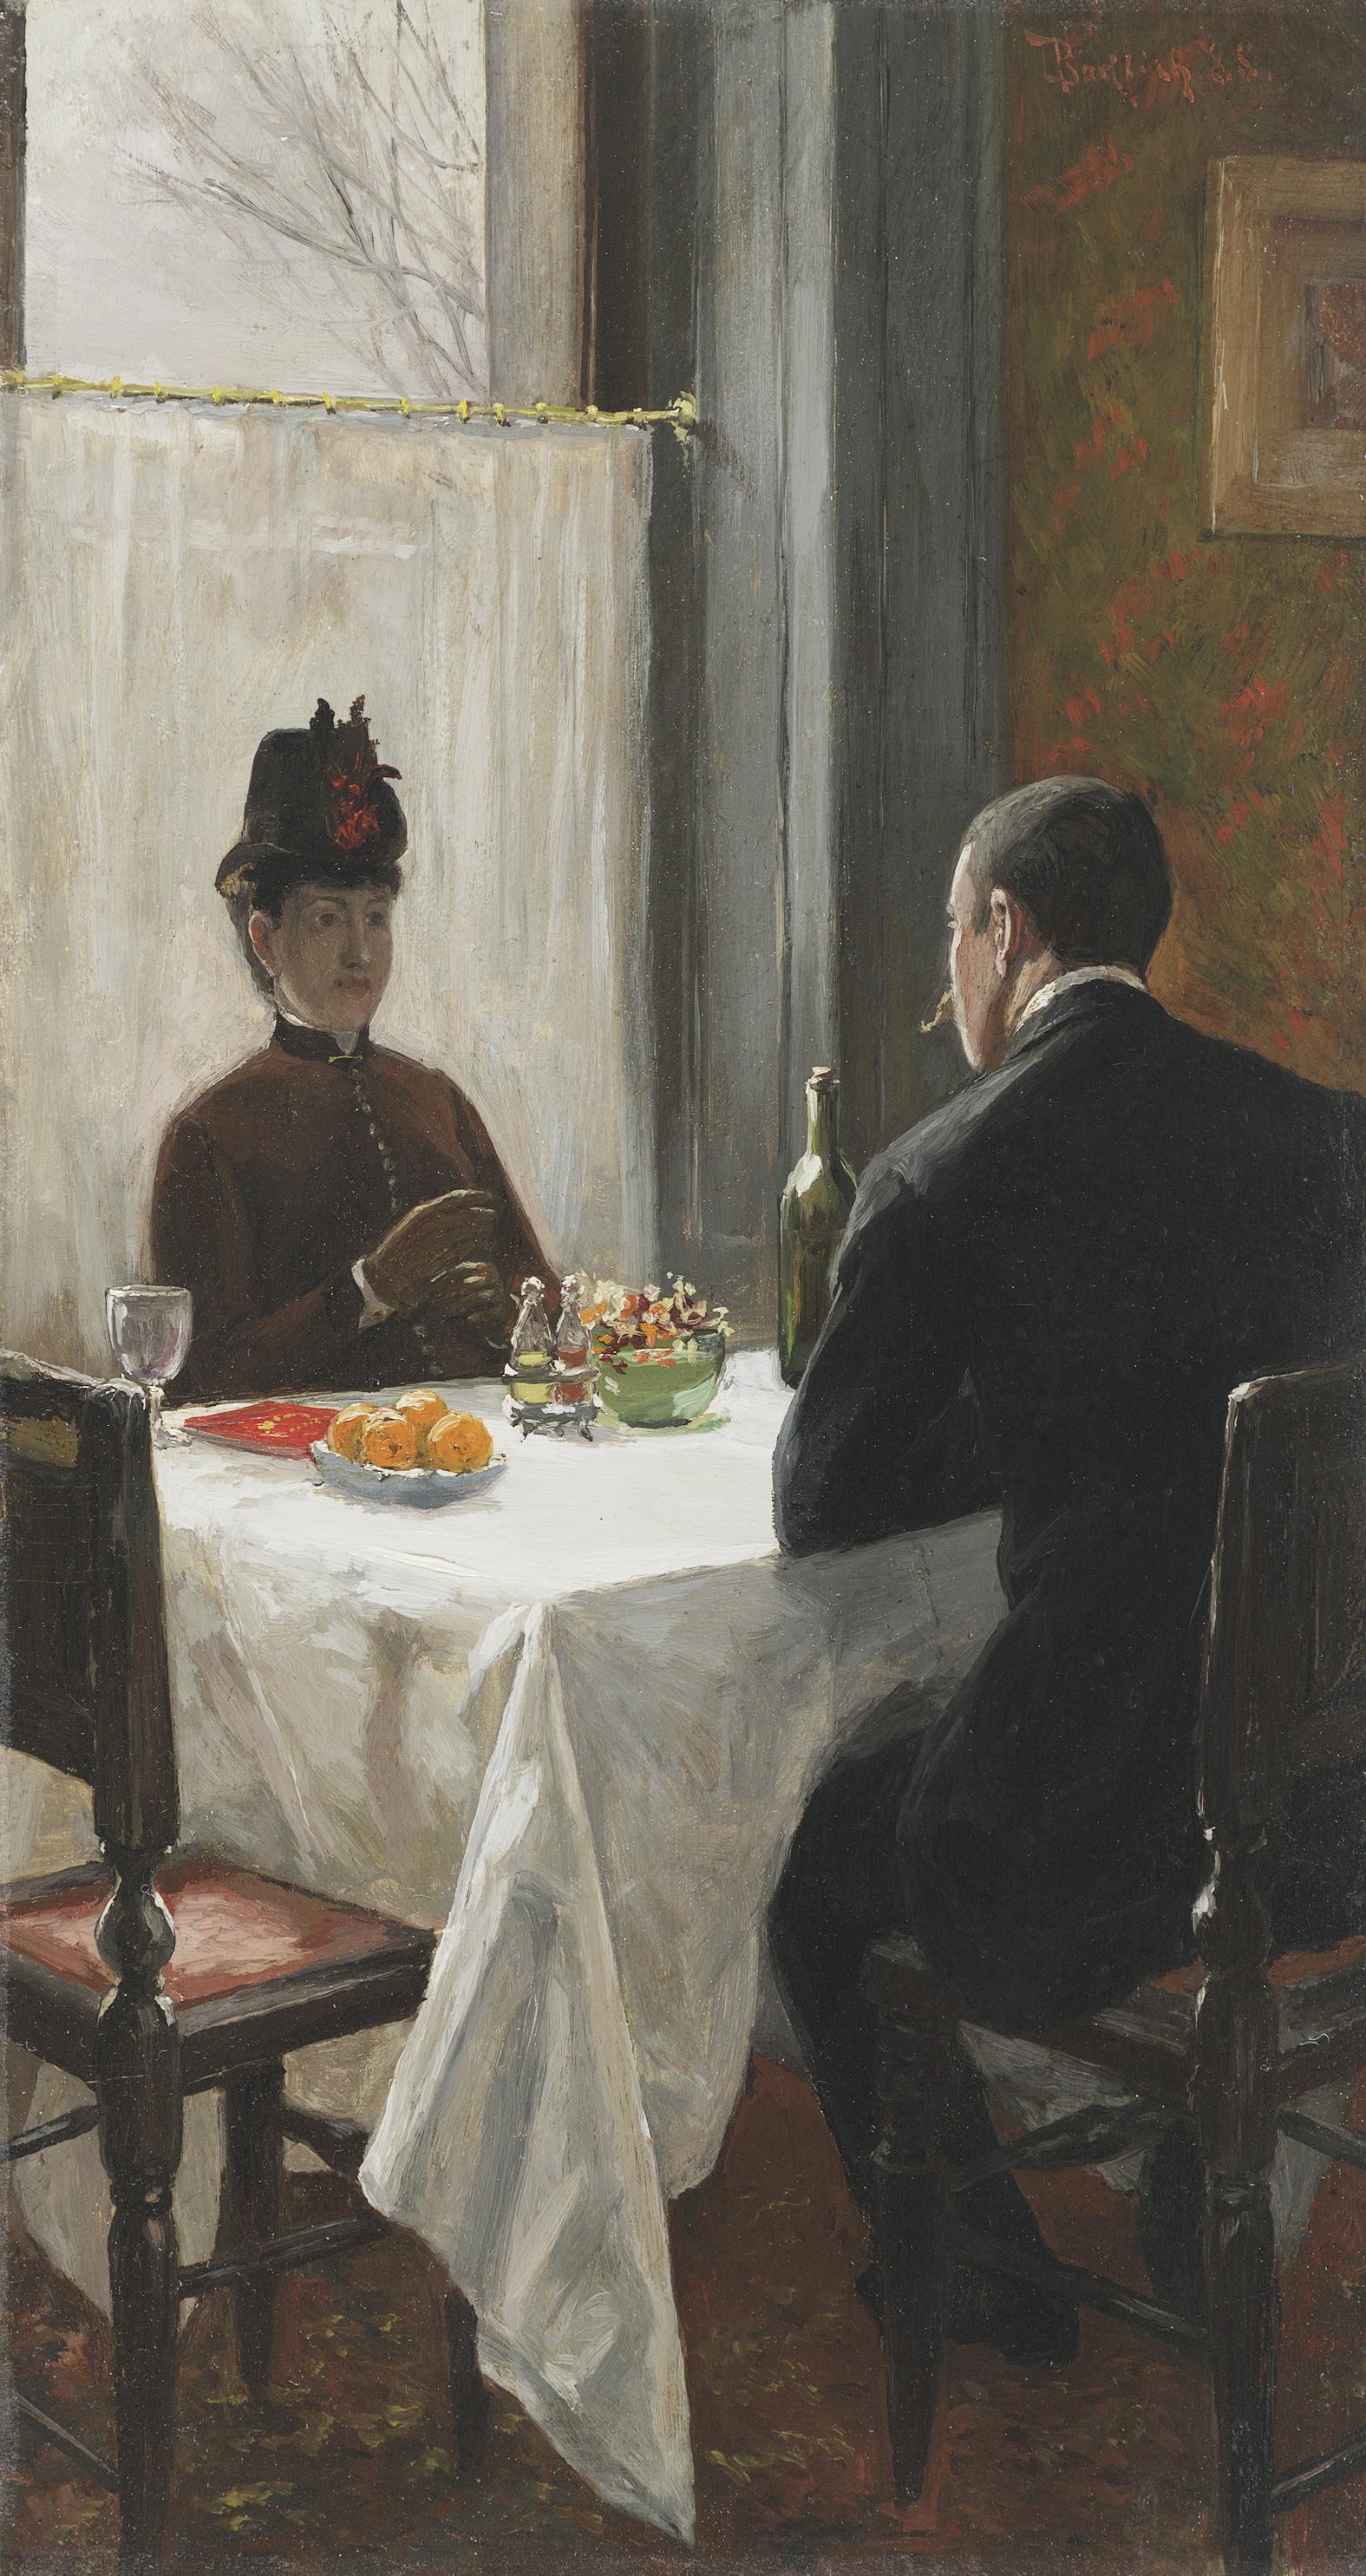 Zwei Figuren in der Kleidung des 19. Jahrhunderts sitzen an einem Tisch in einem Café.

Provenienz: Private Collection, New Jersey

William Bodfish, der ursprünglich aus New York City stammte, war ein talentierter Künstler, der im späten neunzehnten